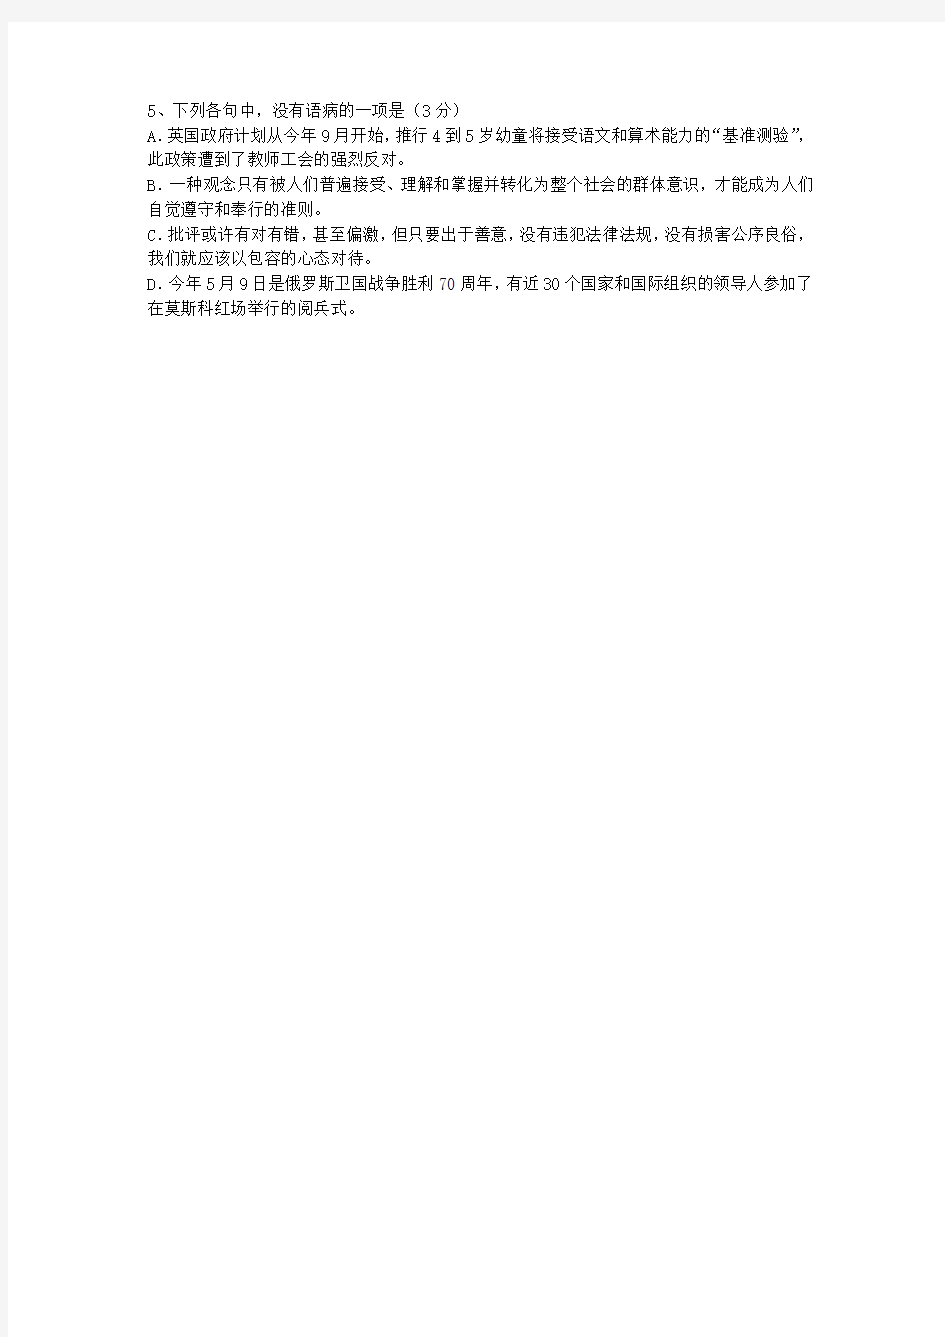 2014黑龙江省高考语文试卷答案、考点详解以及2016预测(必备资料)